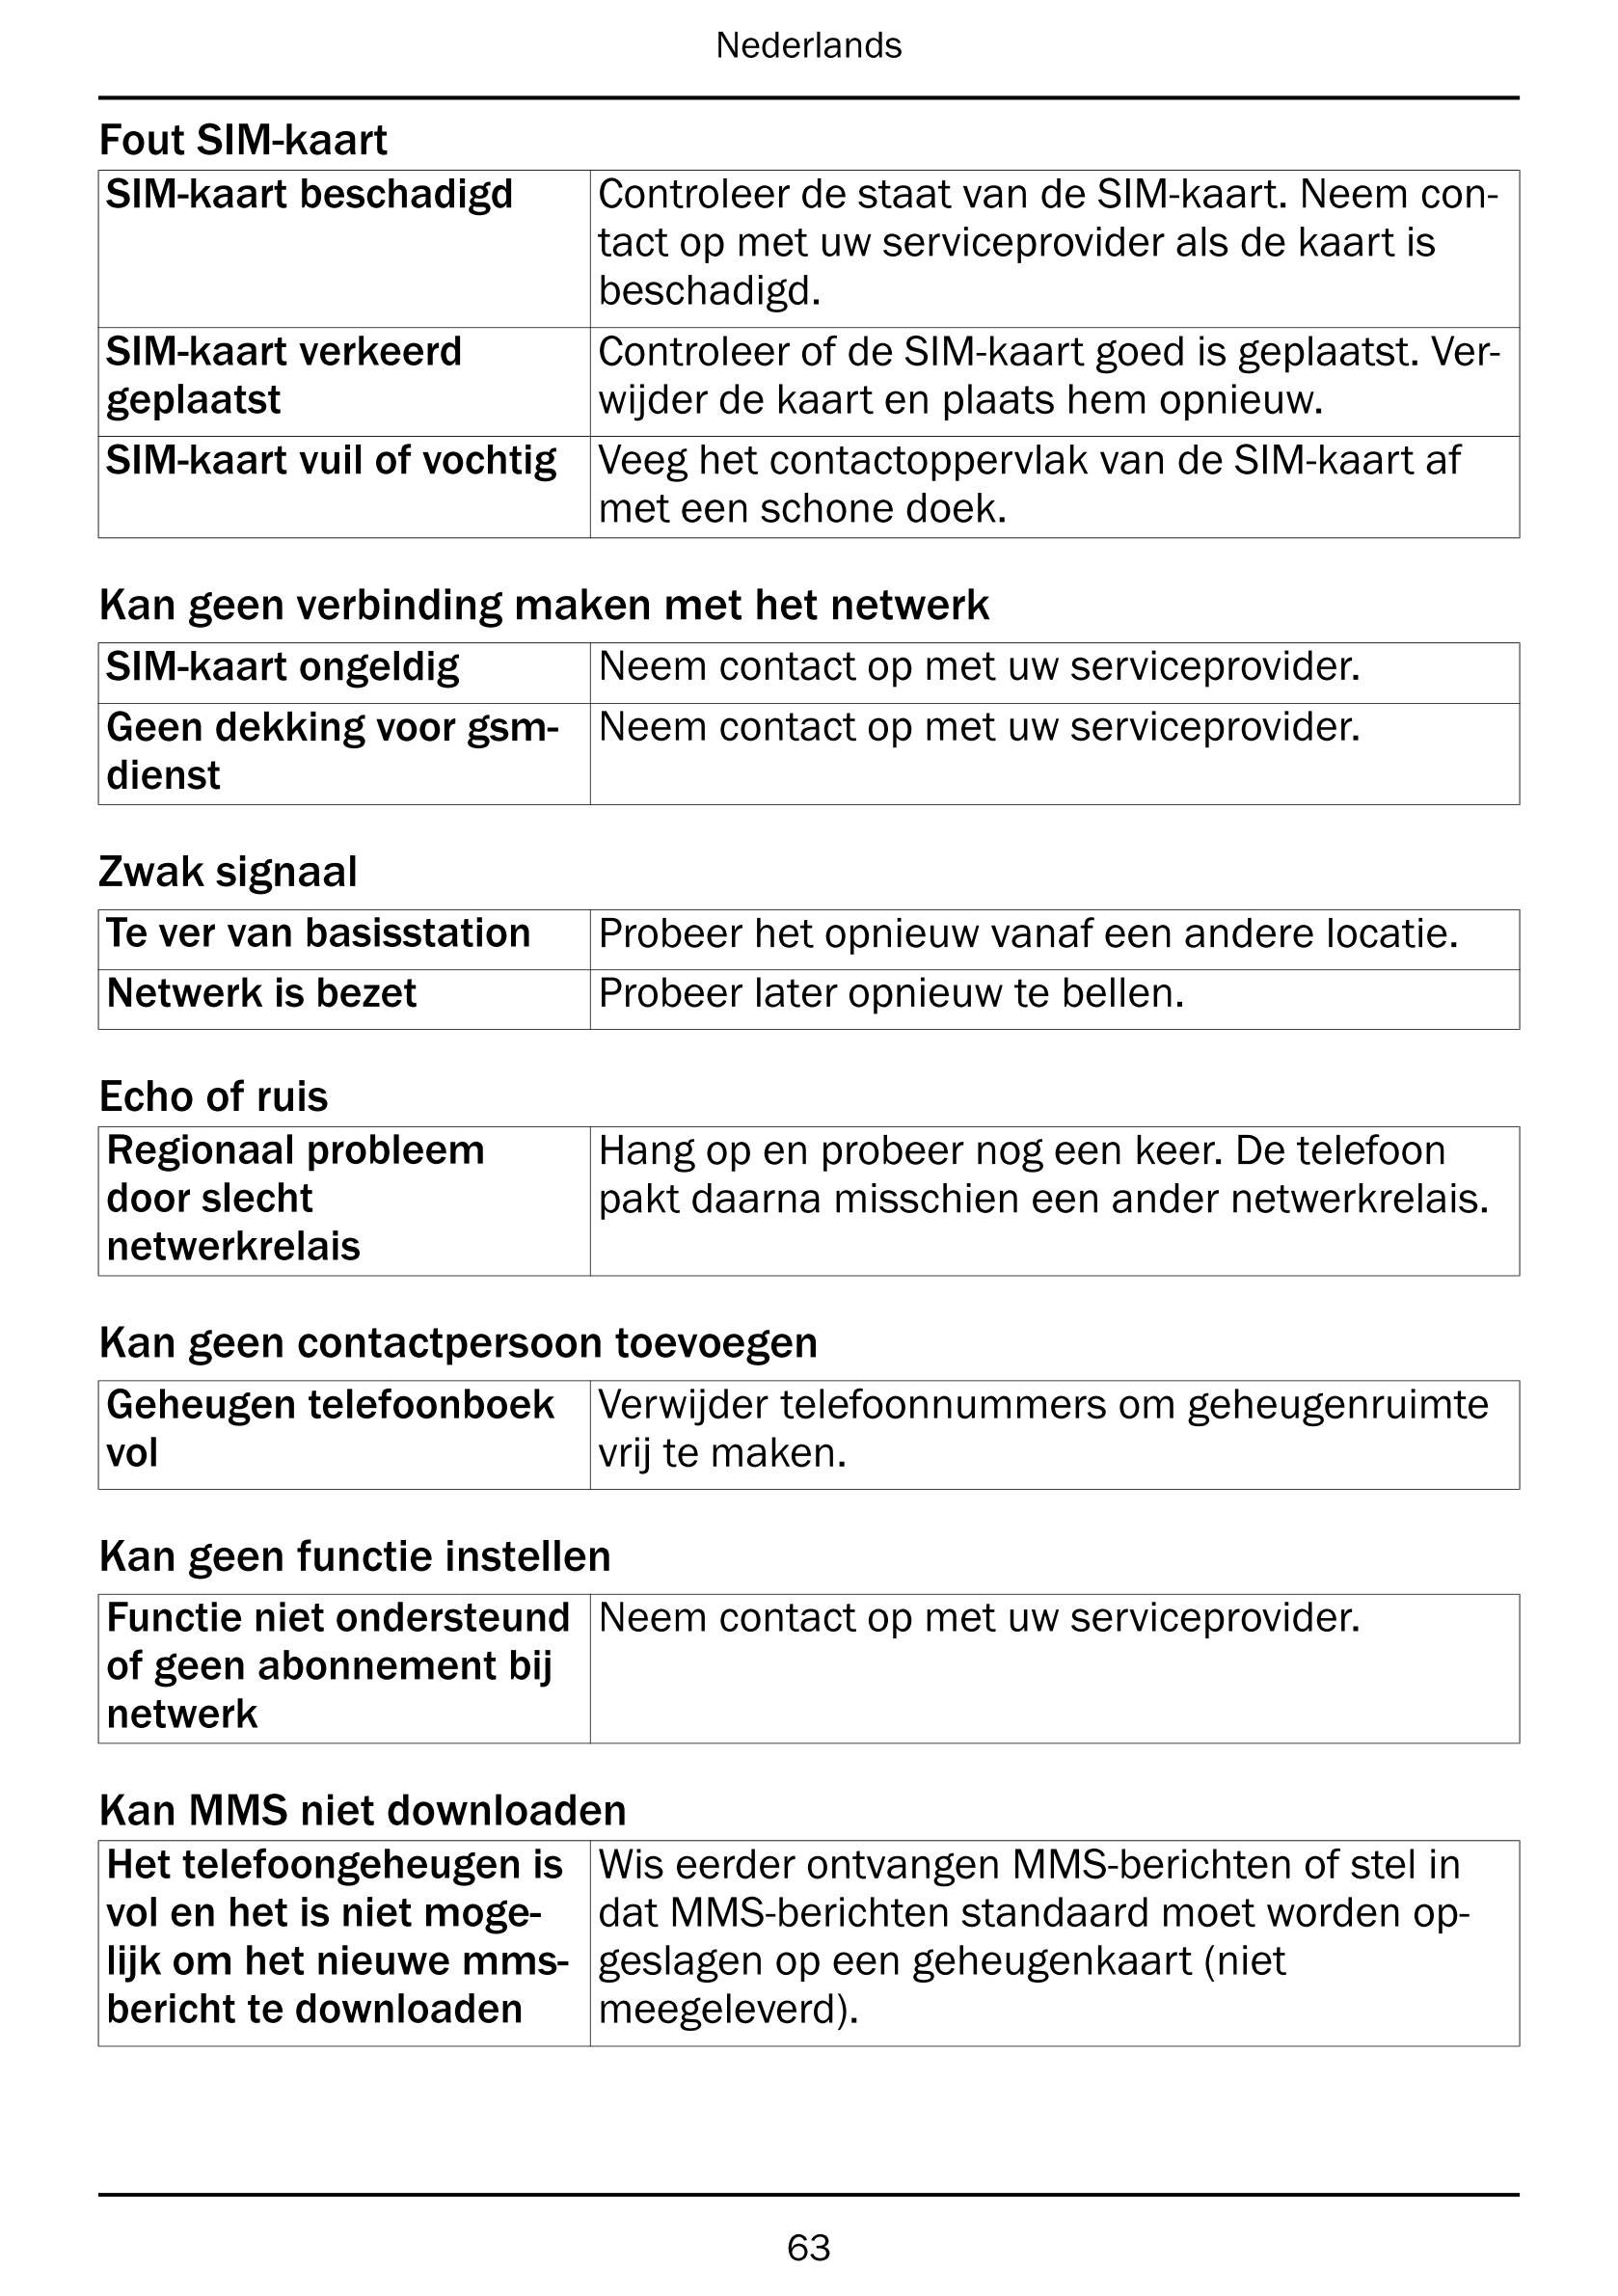 Nederlands
Fout SIM-kaart
SIM-kaart beschadigd Controleer de staat van de SIM-kaart. Neem con-
tact op met uw serviceprovider al